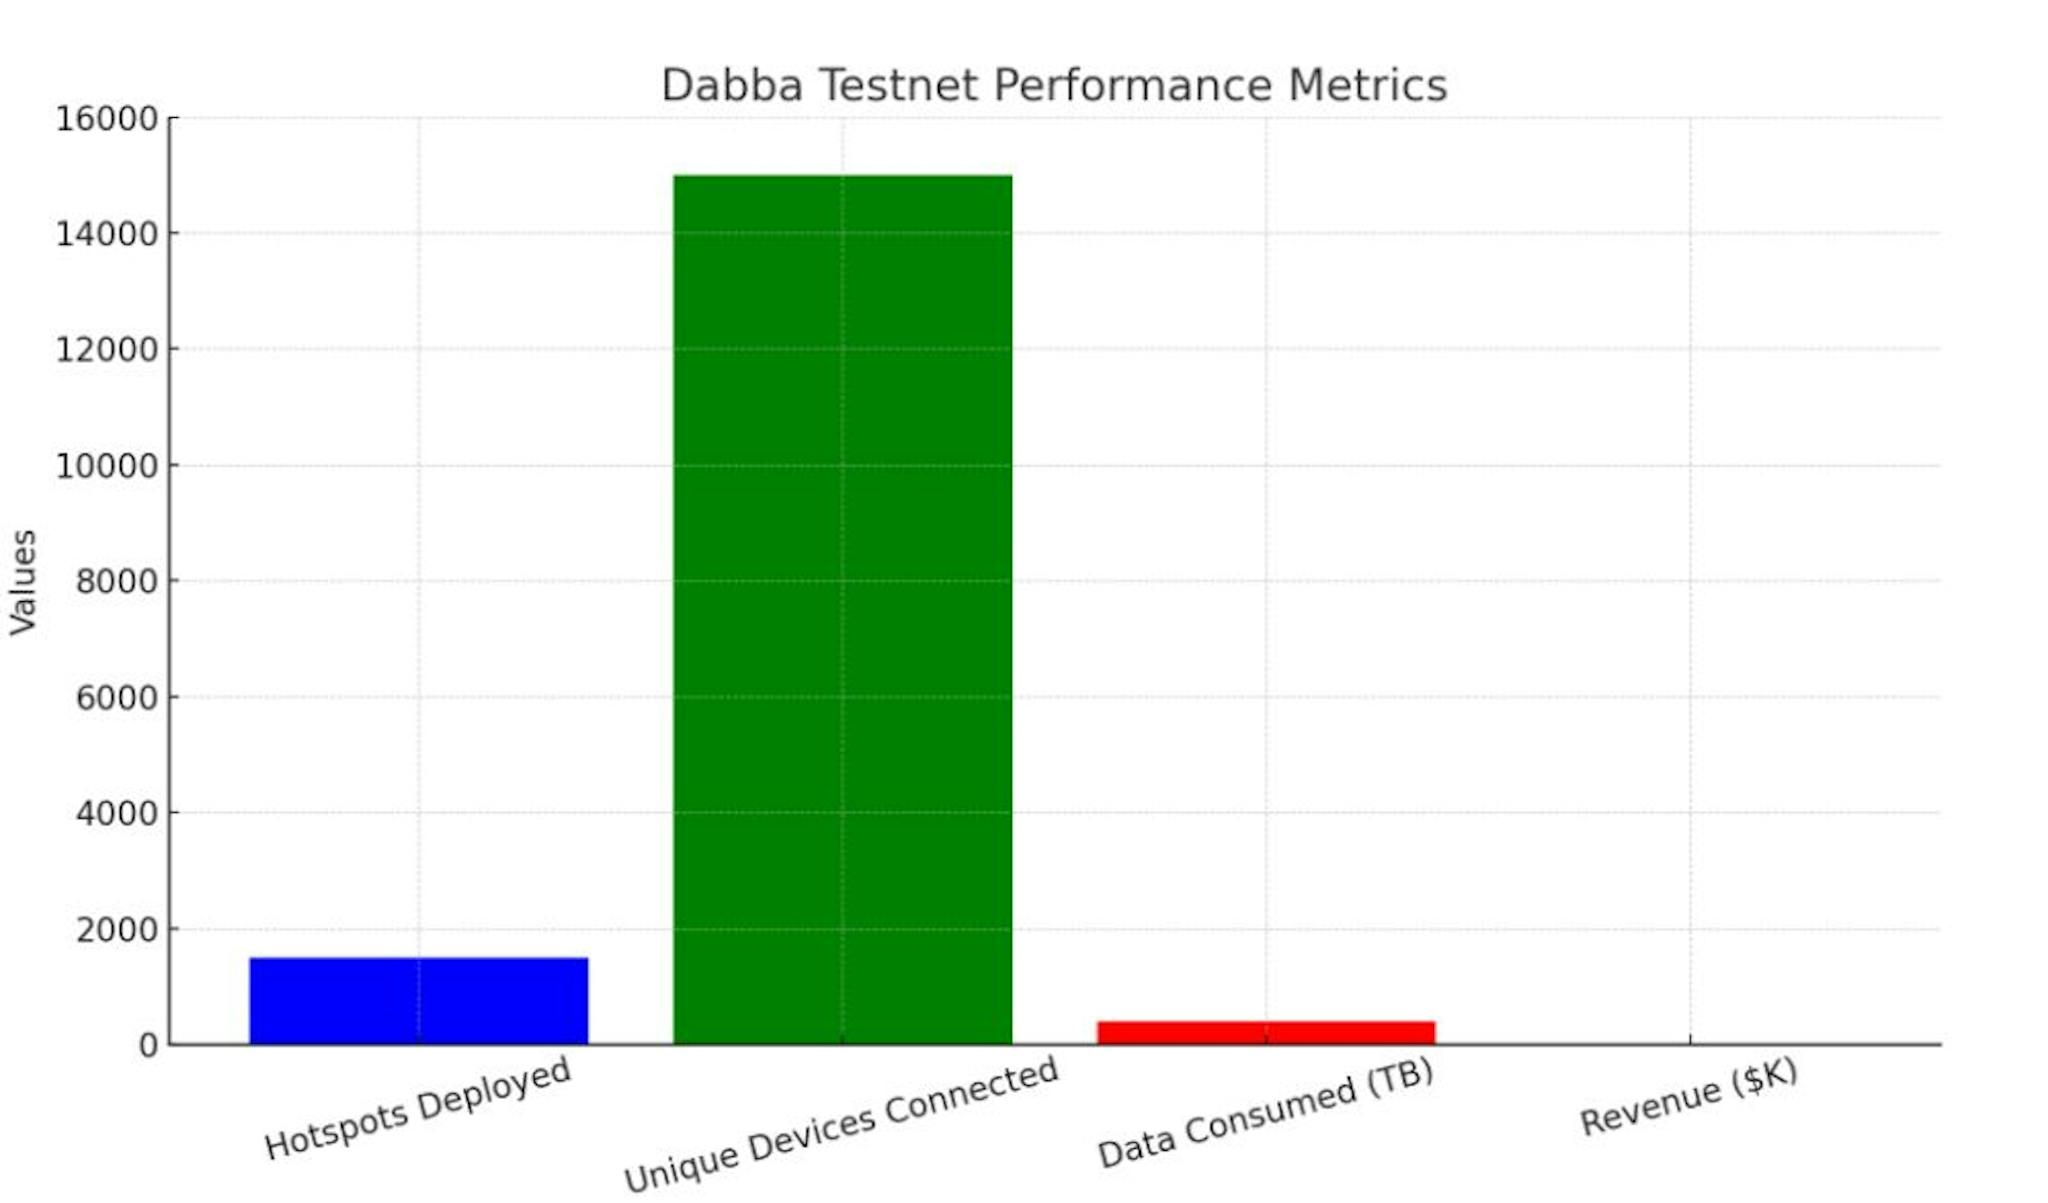 Wichtige Leistungskennzahlen aus dem Dabba-Testnetz der letzten zwei Monate